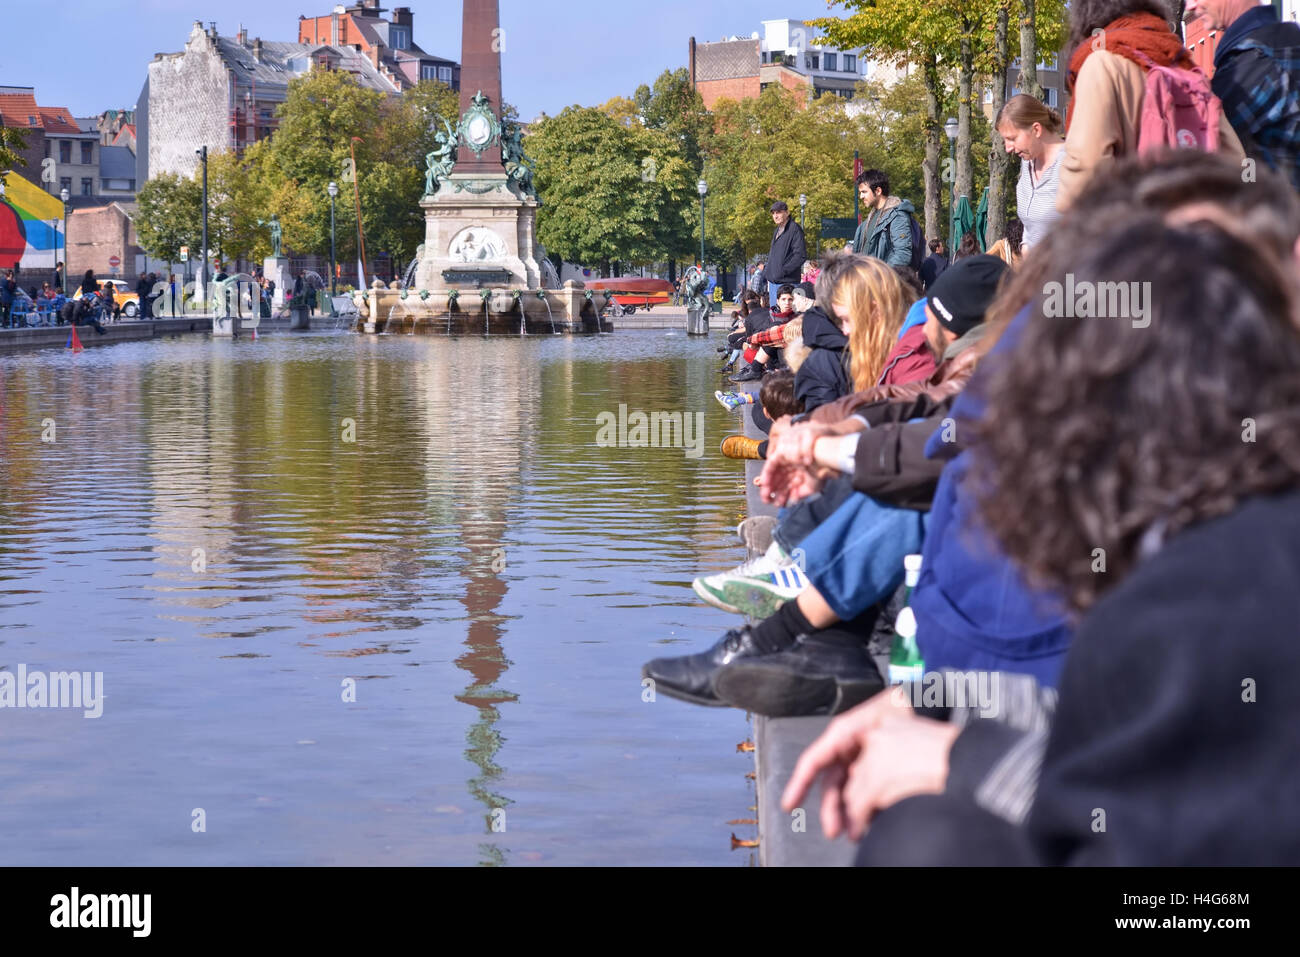 Bruxelles, Belgique. 15 octobre, 2016. Les gens jouent avec des modèles de bateaux à voile pendant l'événement de divertissement public en secteur Saint Vismet Cath Sur Mer le 15 octobre 2016 à Bruxelles, Belgique. Credit : Skyfish/Alamy Live News Banque D'Images